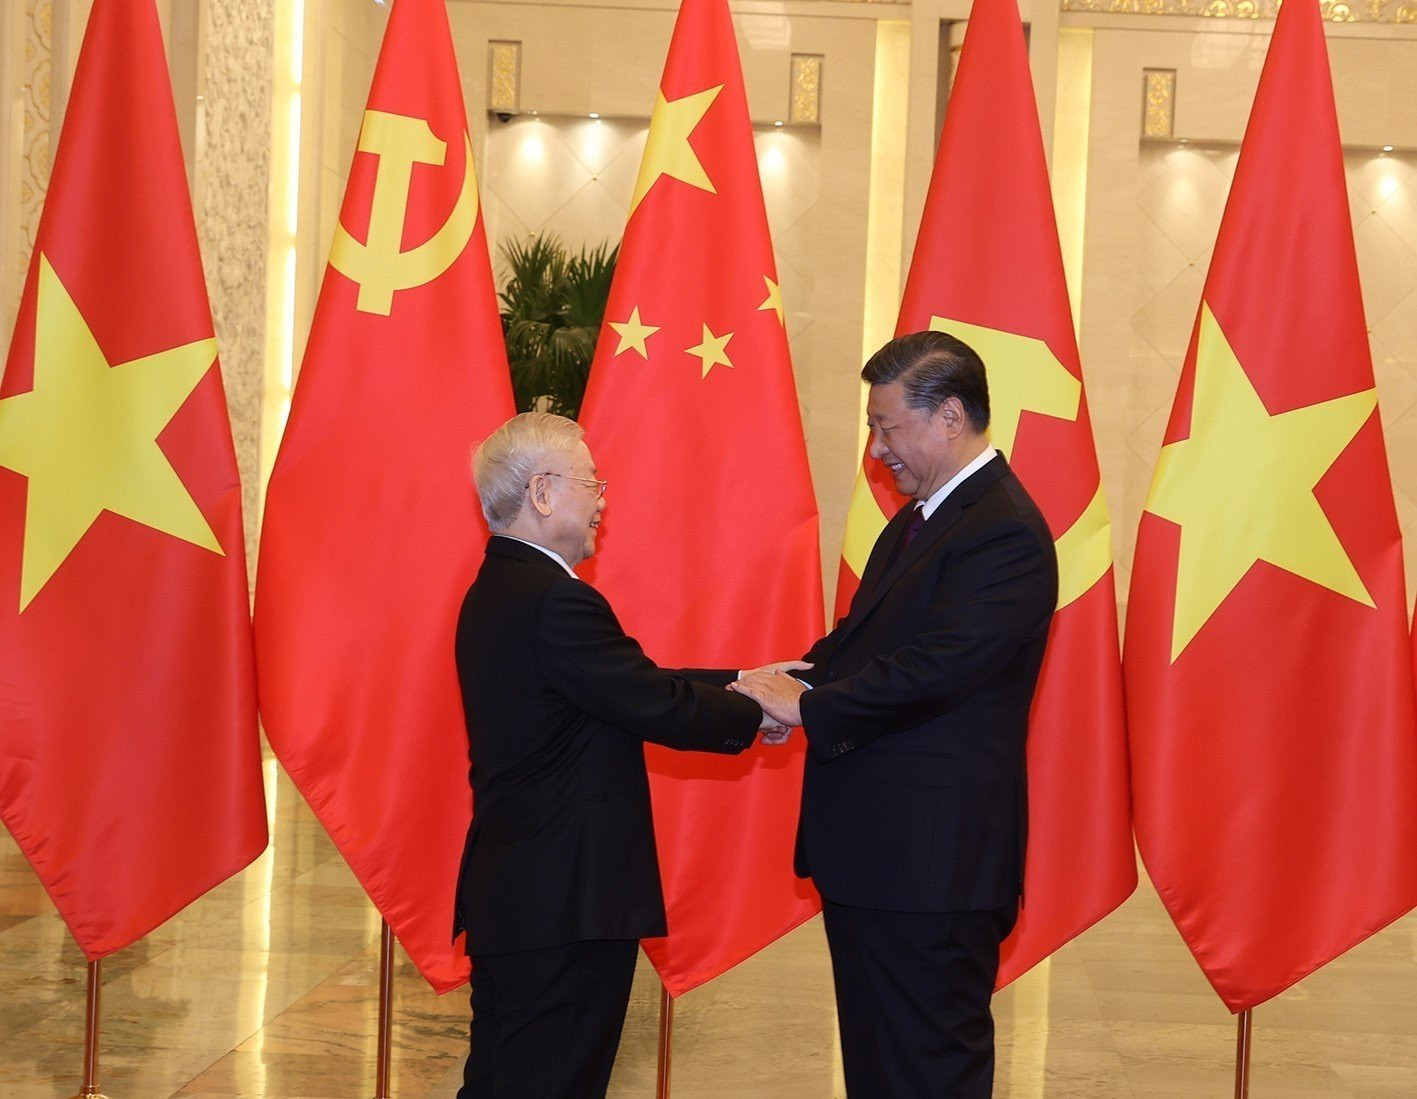 Việt Nam và Trung Quốc đang tăng cường hợp tác và quan hệ thân thiện nhằm đem lại lợi ích lớn cho cả hai quốc gia. Hai bên đã thực hiện những động thái tích cực, đẩy mạnh thương mại, đầu tư và du lịch. Chúng ta cùng chứng kiến những hình ảnh đầy tươi vui và một tương lai tươi sáng cho quan hệ Việt-Trung.